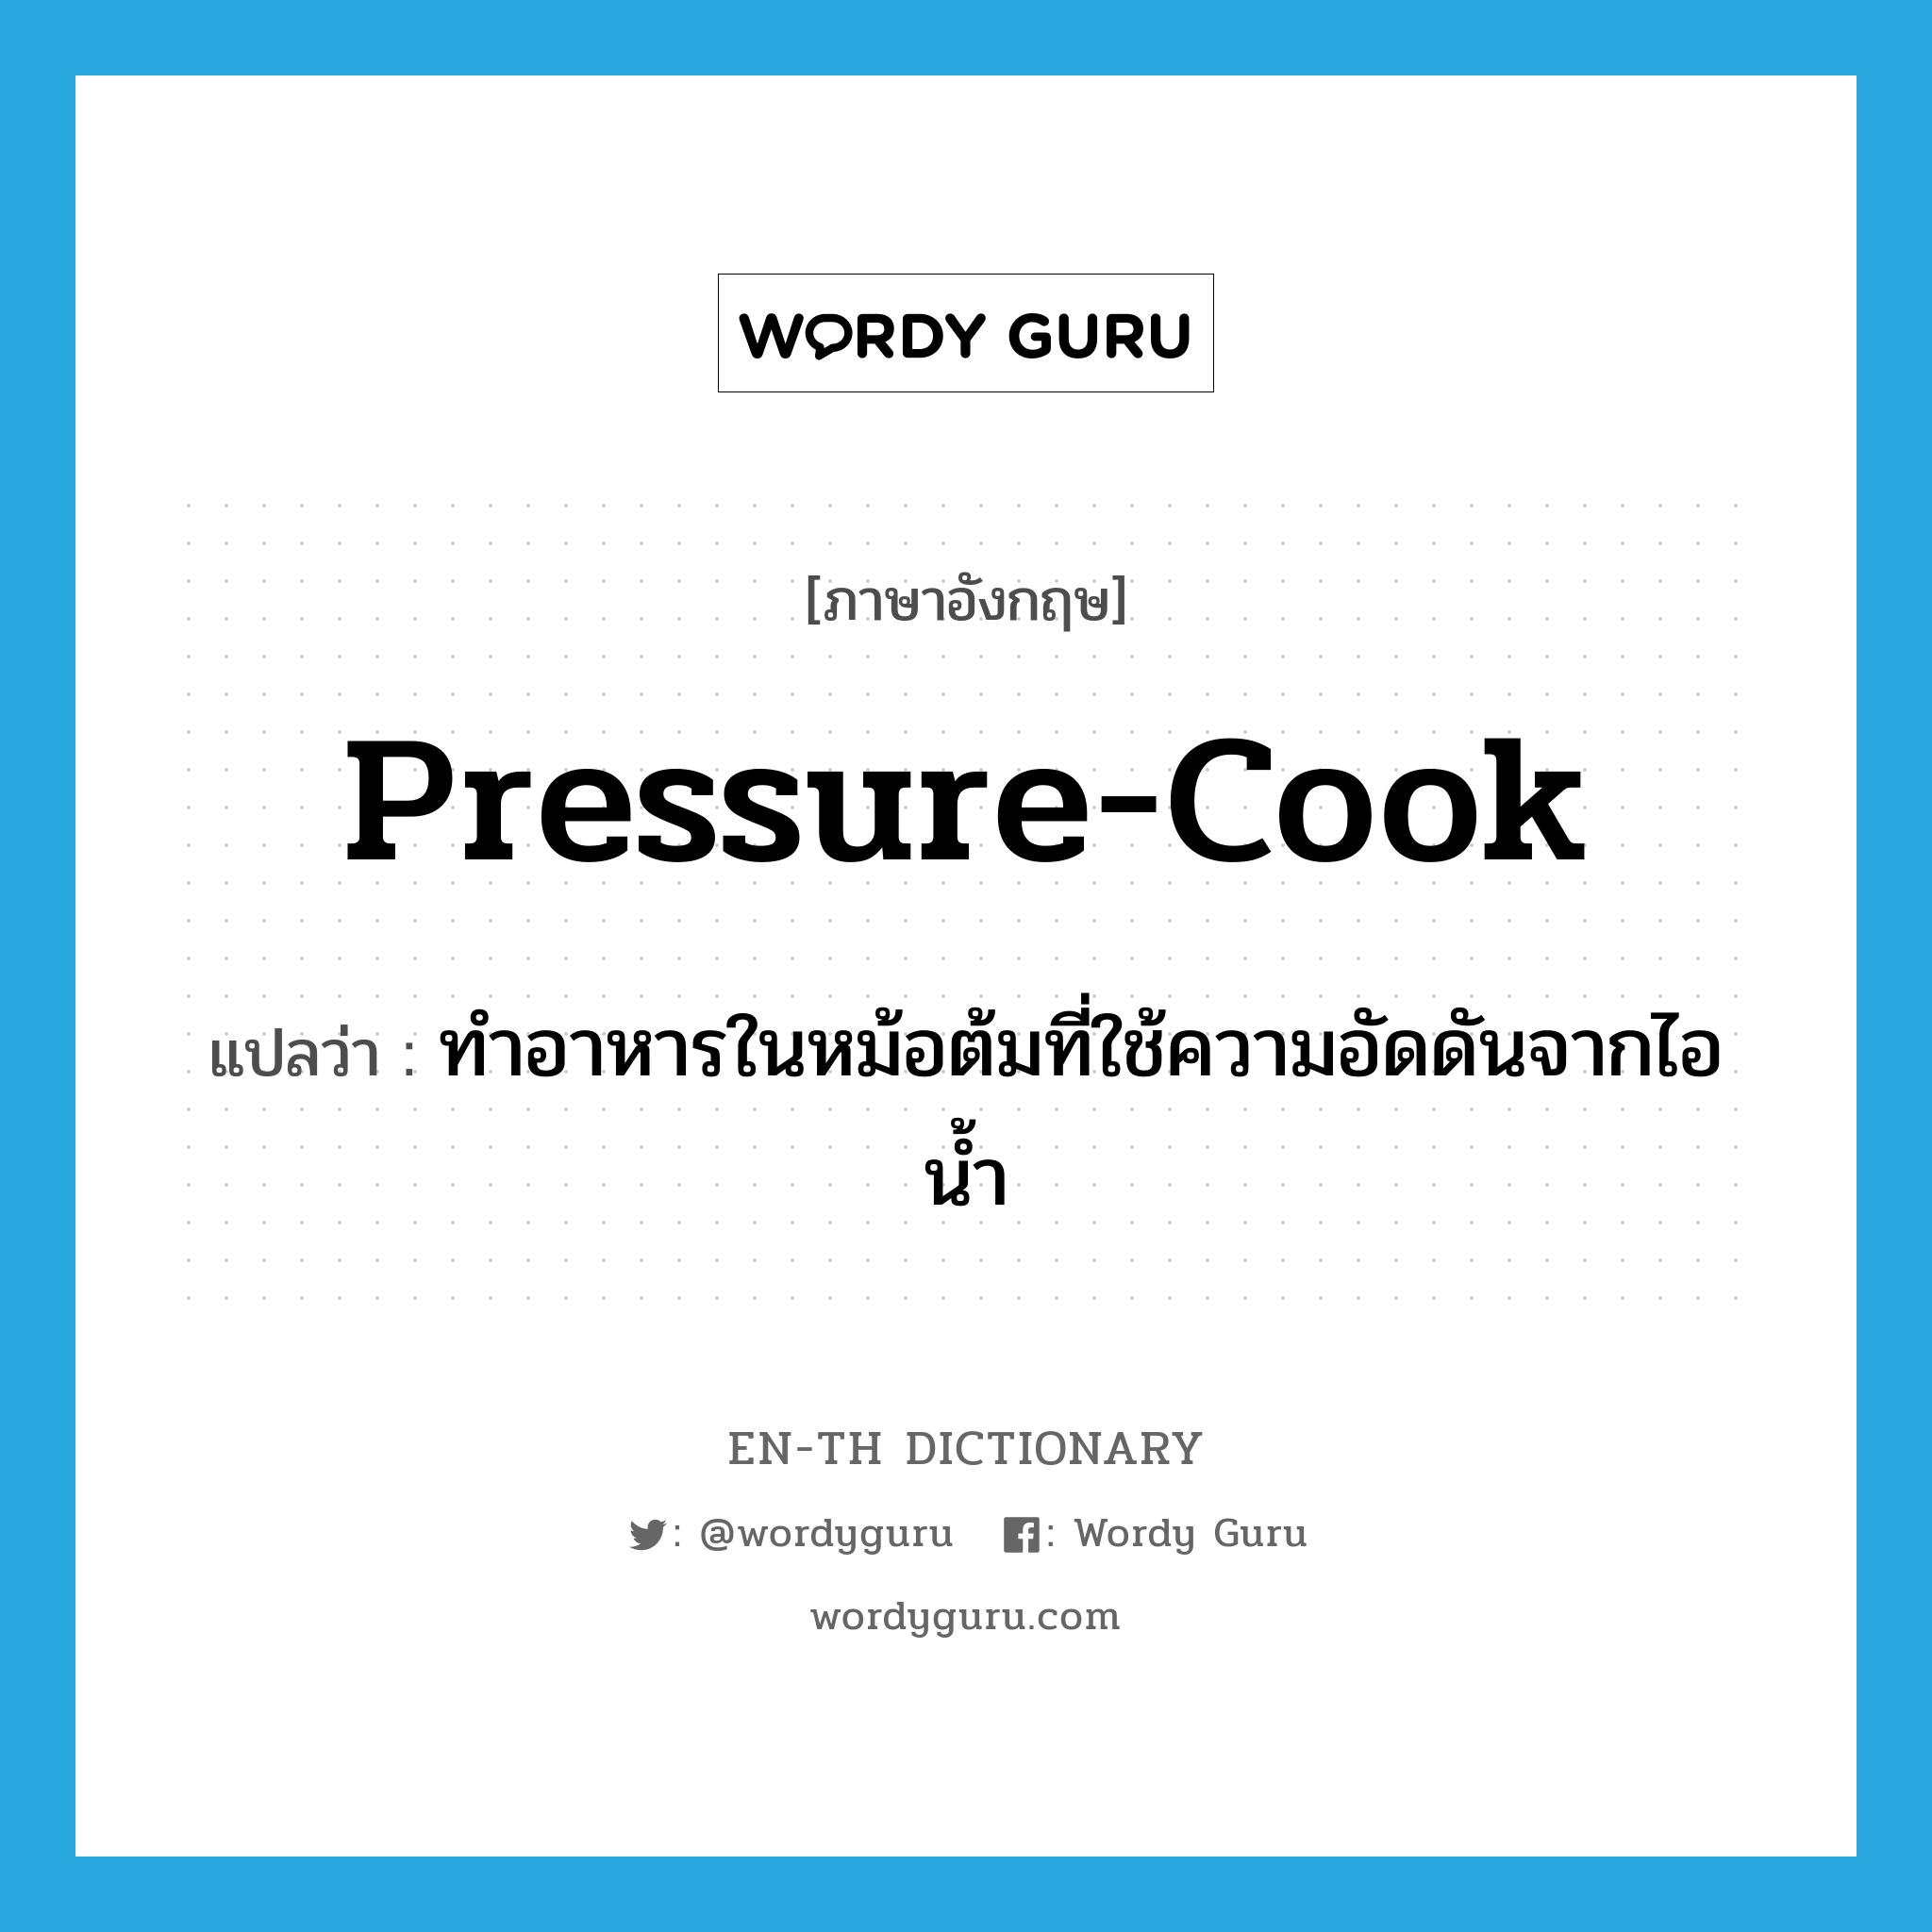 ทำอาหารในหม้อต้มที่ใช้ความอัดดันจากไอน้ำ ภาษาอังกฤษ?, คำศัพท์ภาษาอังกฤษ ทำอาหารในหม้อต้มที่ใช้ความอัดดันจากไอน้ำ แปลว่า pressure-cook ประเภท VT หมวด VT